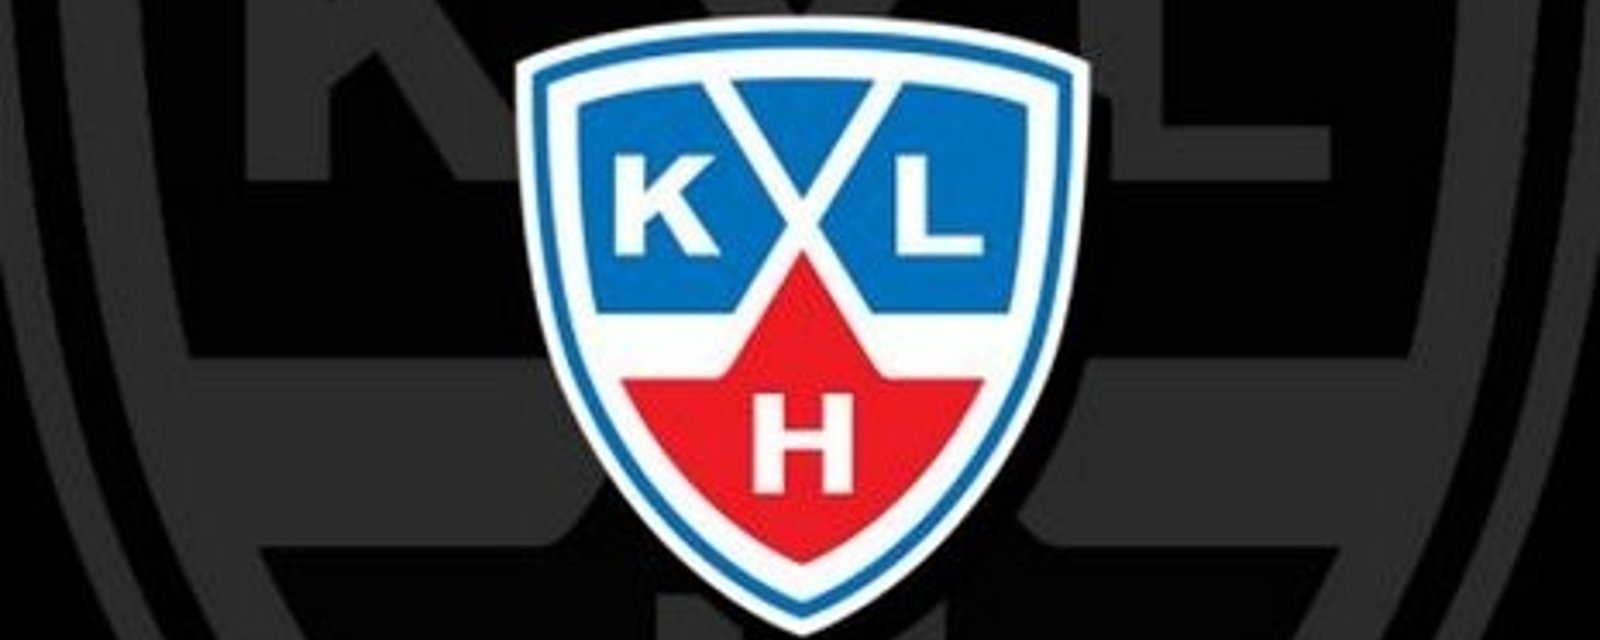 Un ancien choix de première ronde quitte pour la KHL! 